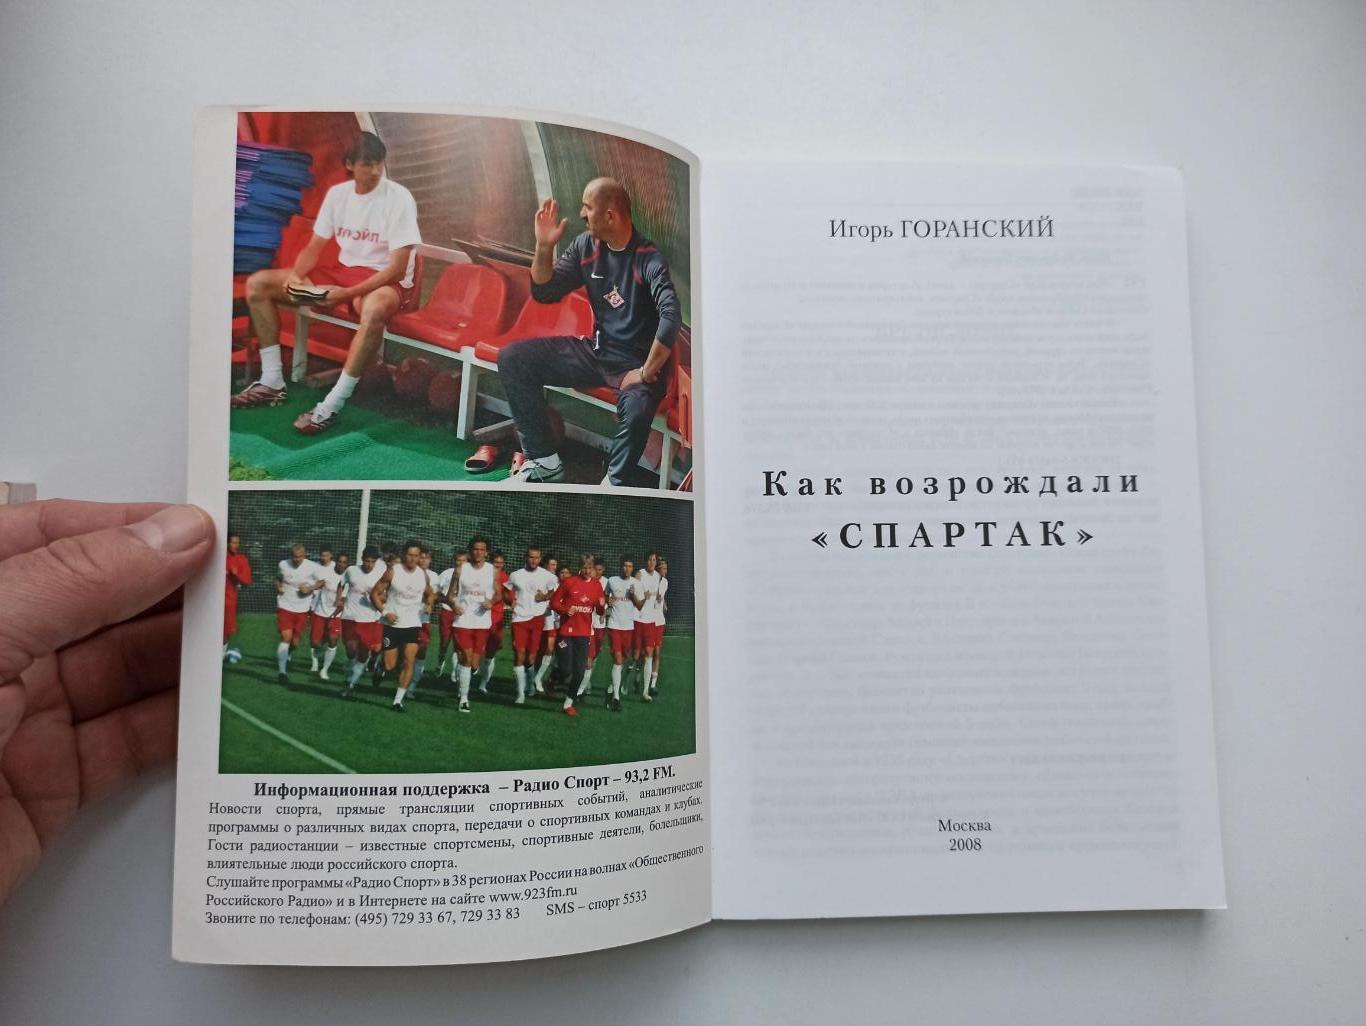 Футбол, Игорь Горанский, Как возрождали Спартак, Москва, 2008г., редкая книга 5